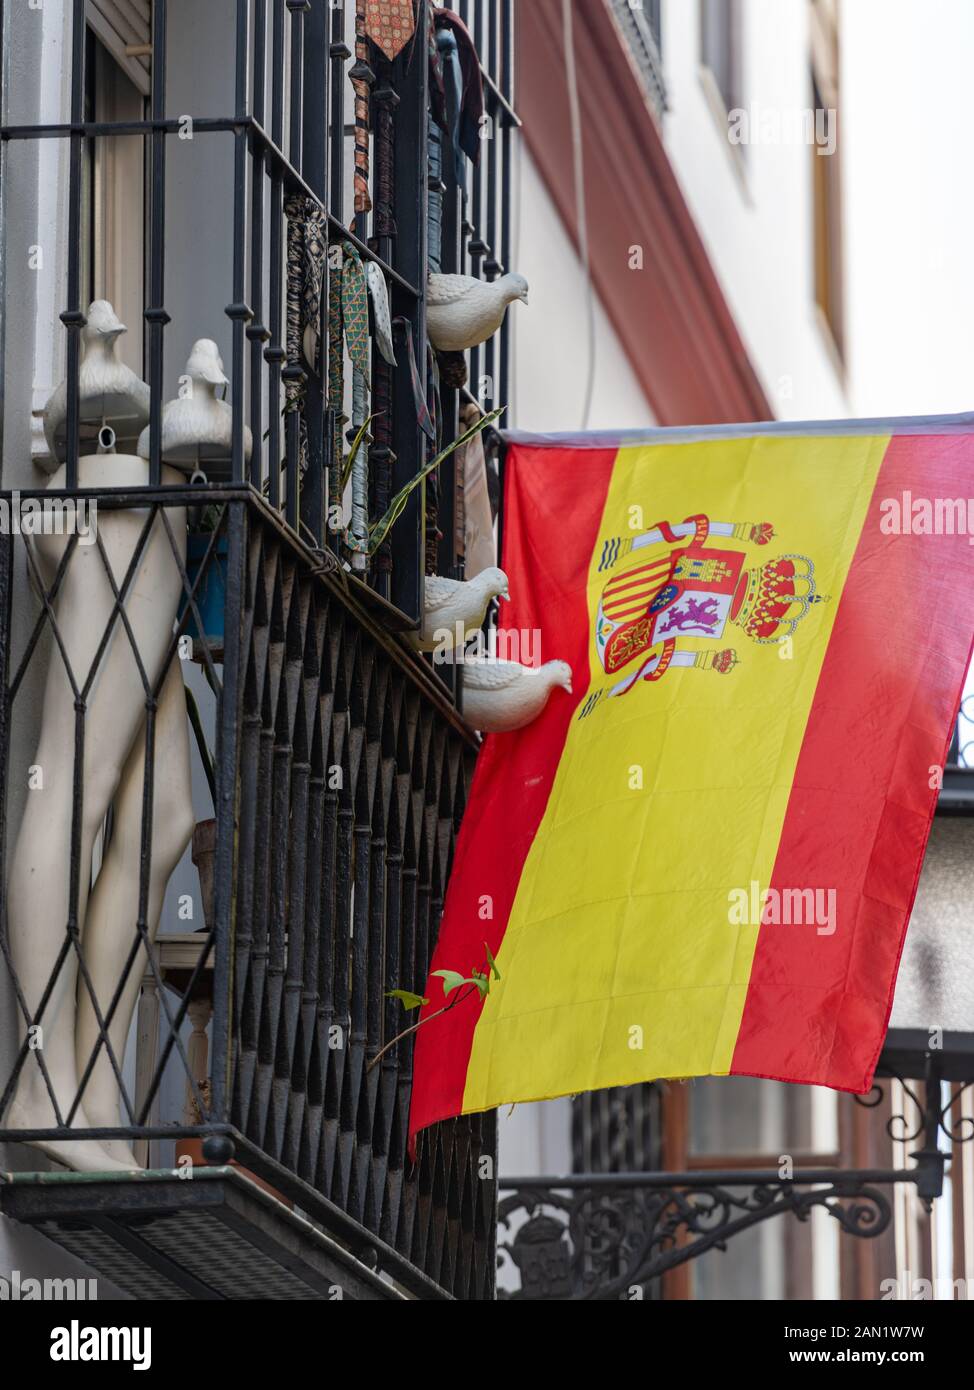 Eine Sammlung gegossener Tauben blickt auf eine spanische Flagge, die von einem traditionellen, schmiedeeisernen Balkon aus Sevilla mit Mannequin's Legs & Men's Krawatten hängt. Stockfoto